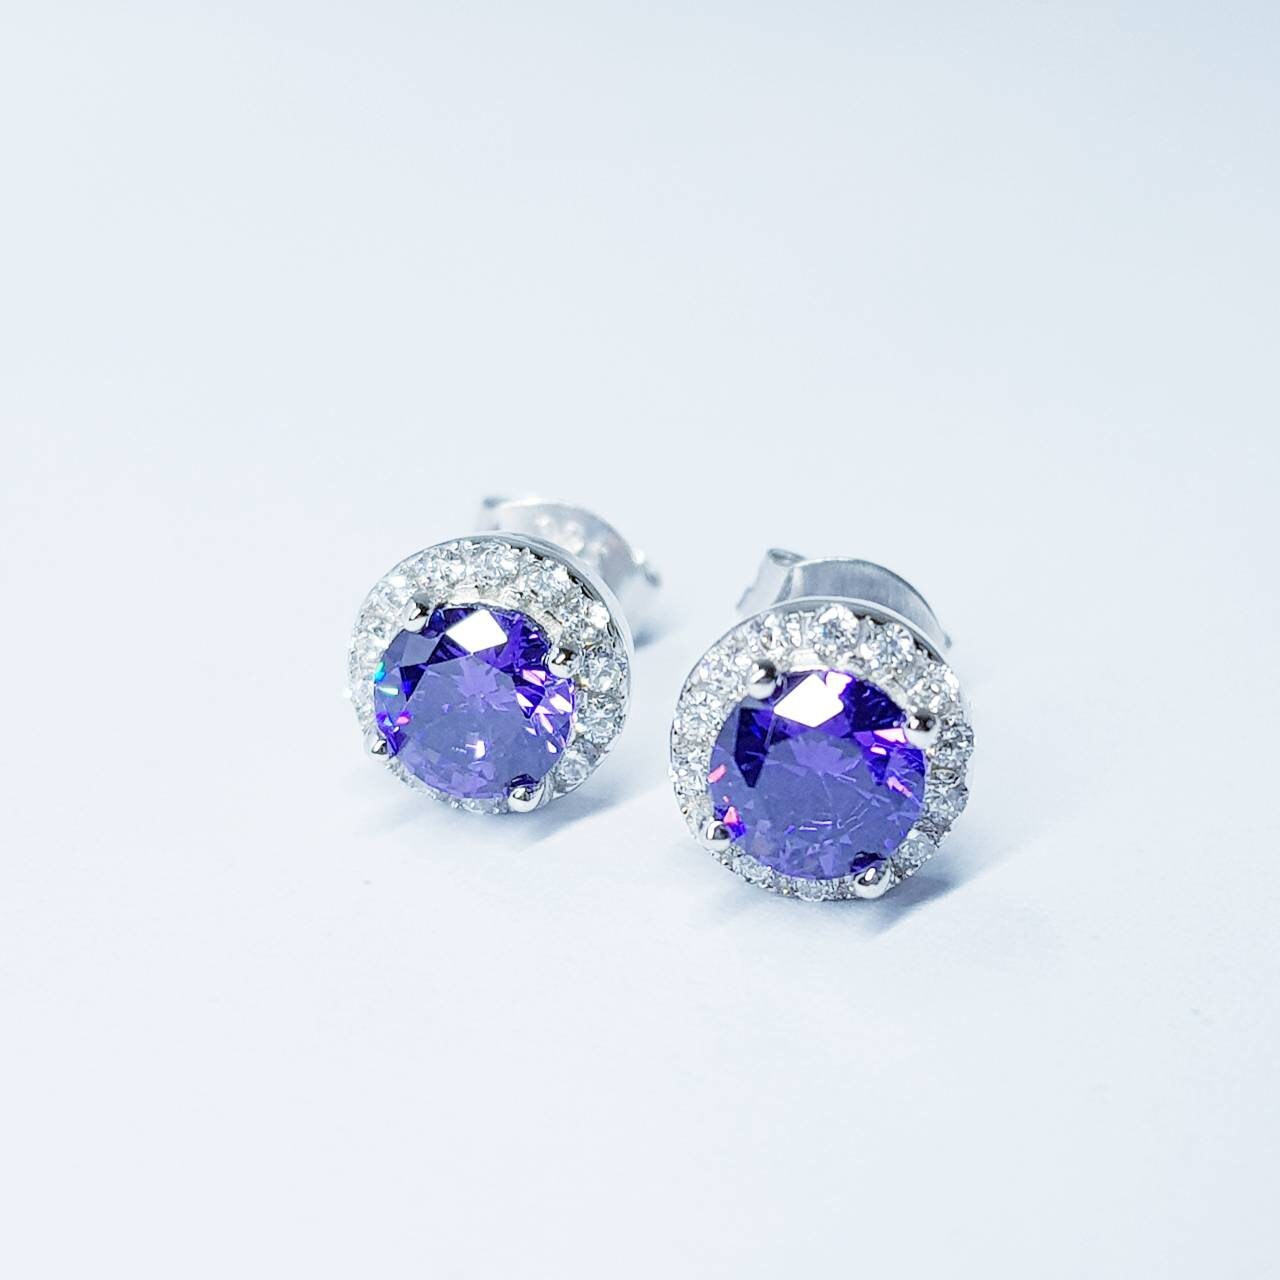 Small Amethyst earrings, stud earrings, birthstone earrings, february earrings, earrings for women, classic stud earrings